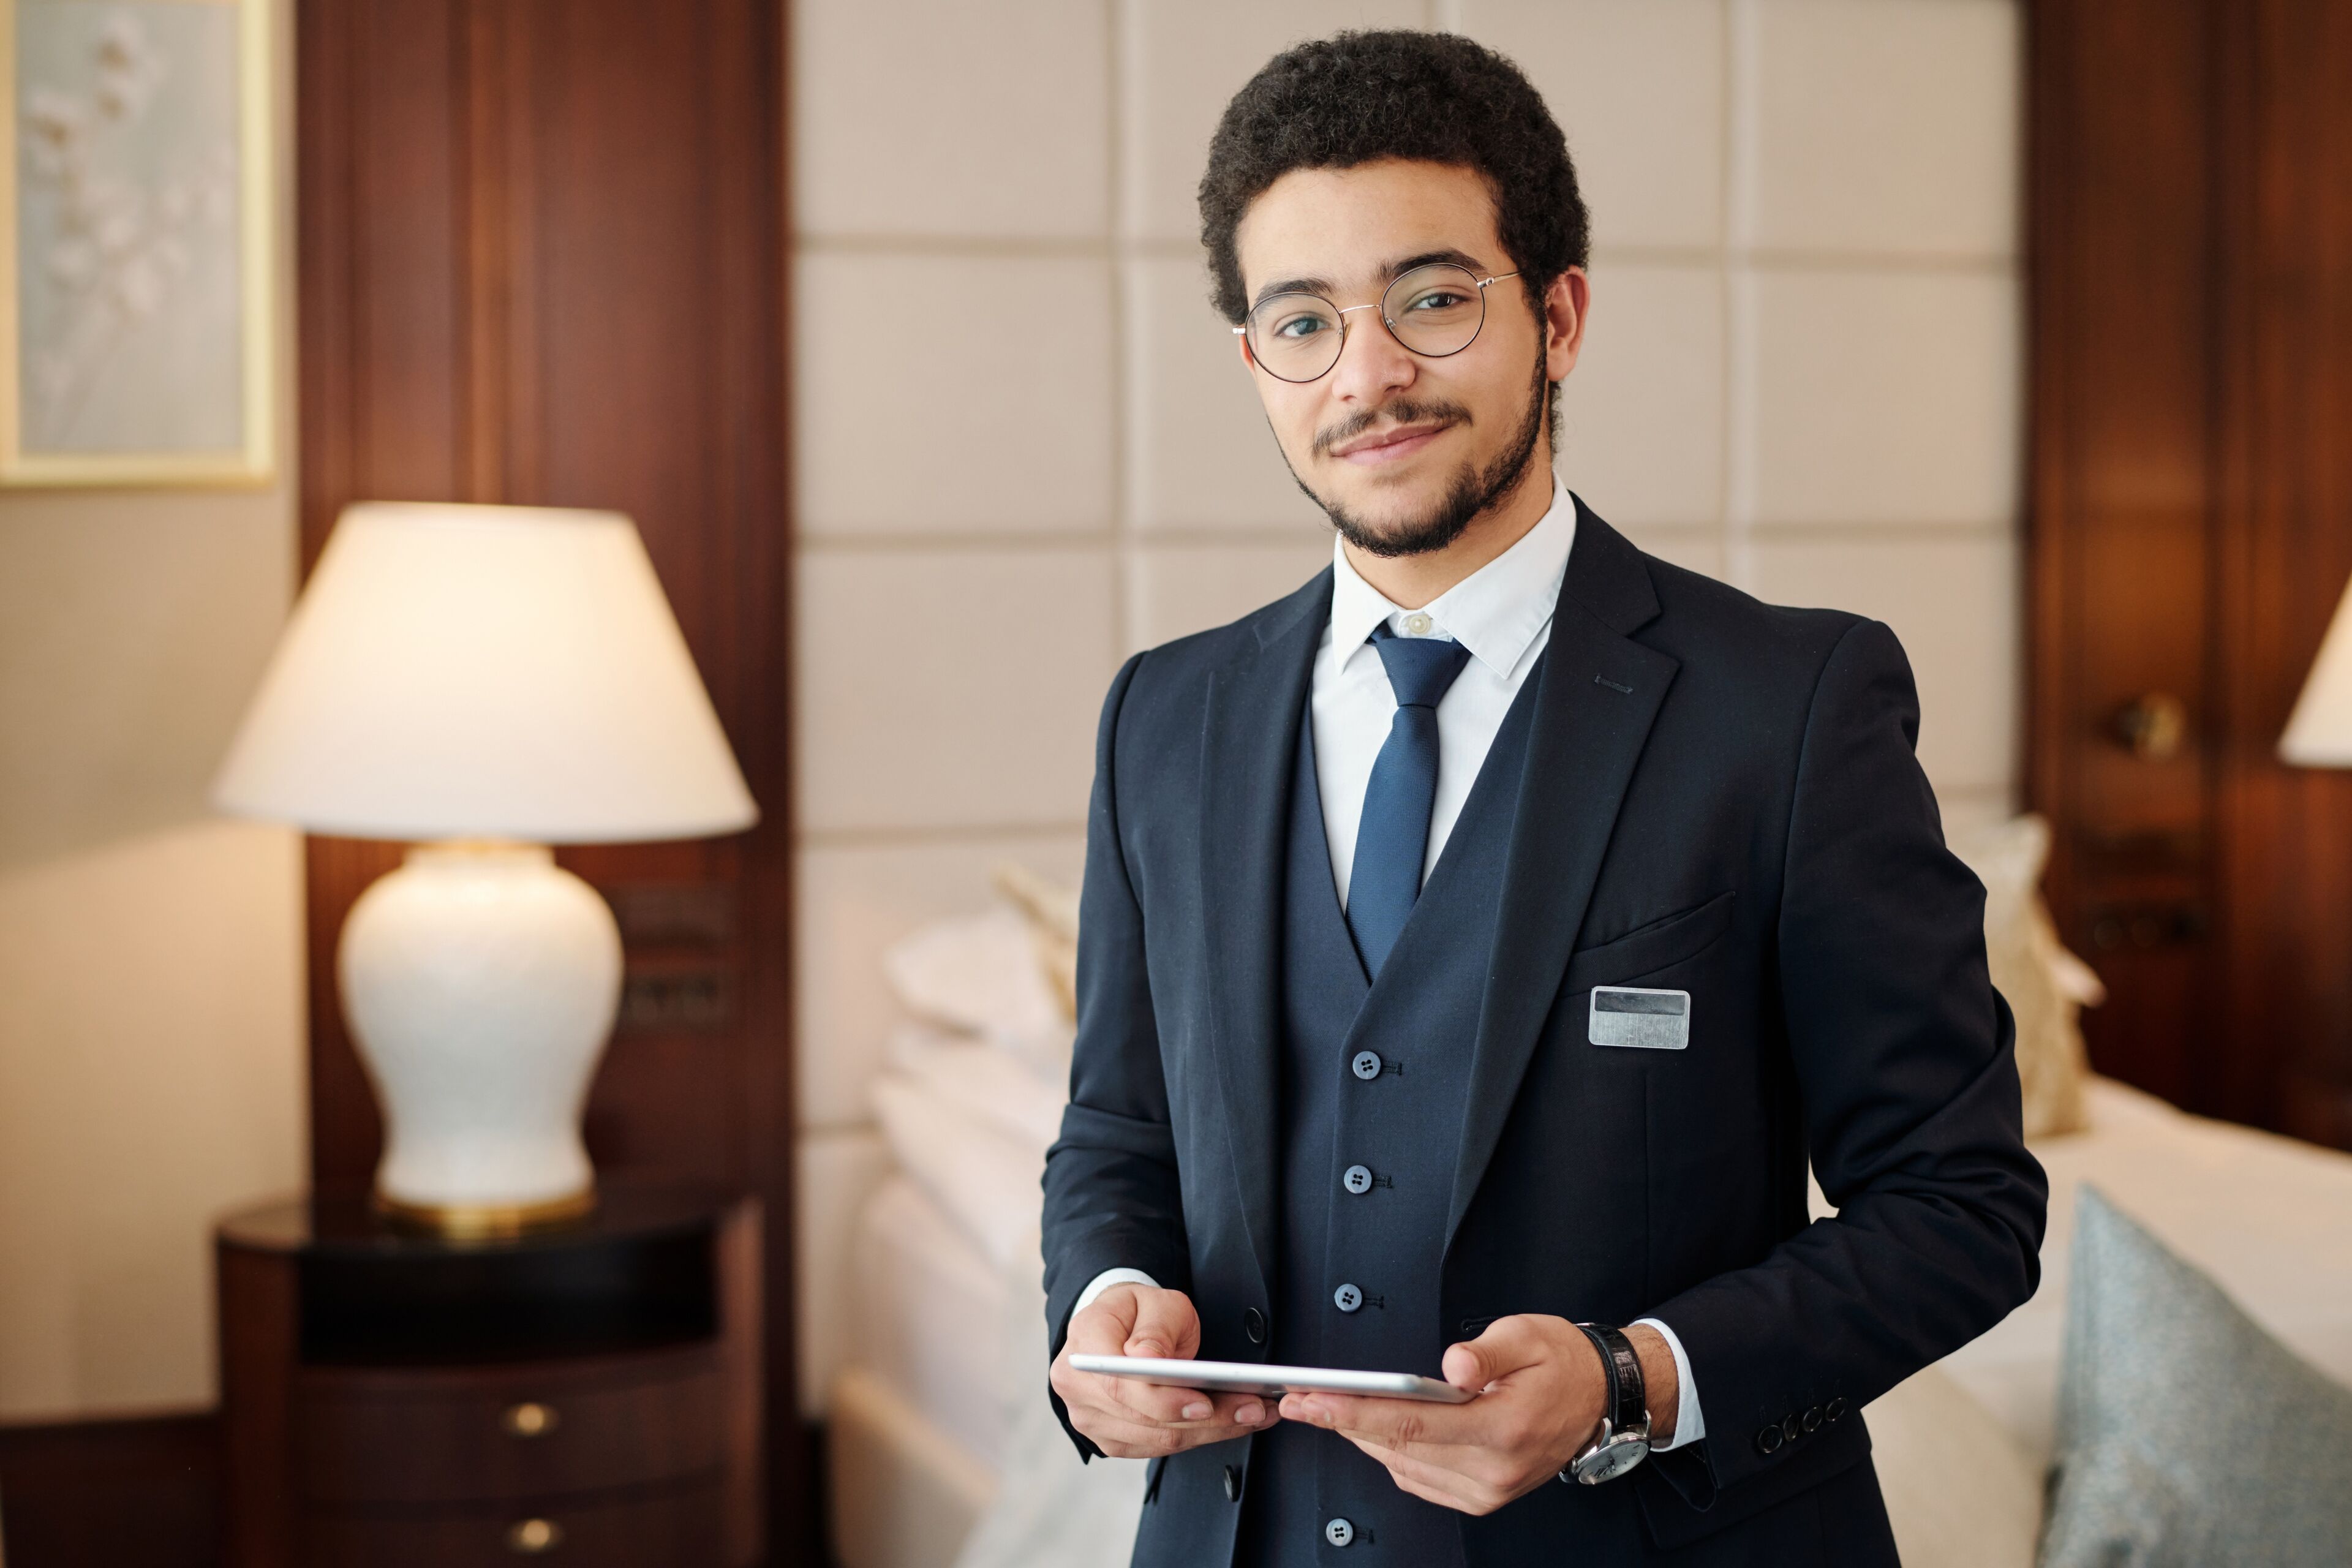 Un conserje profesional en traje a medida se encuentra con una sonrisa de bienvenida, sosteniendo una tableta digital en una habitación de hotel lujosa.